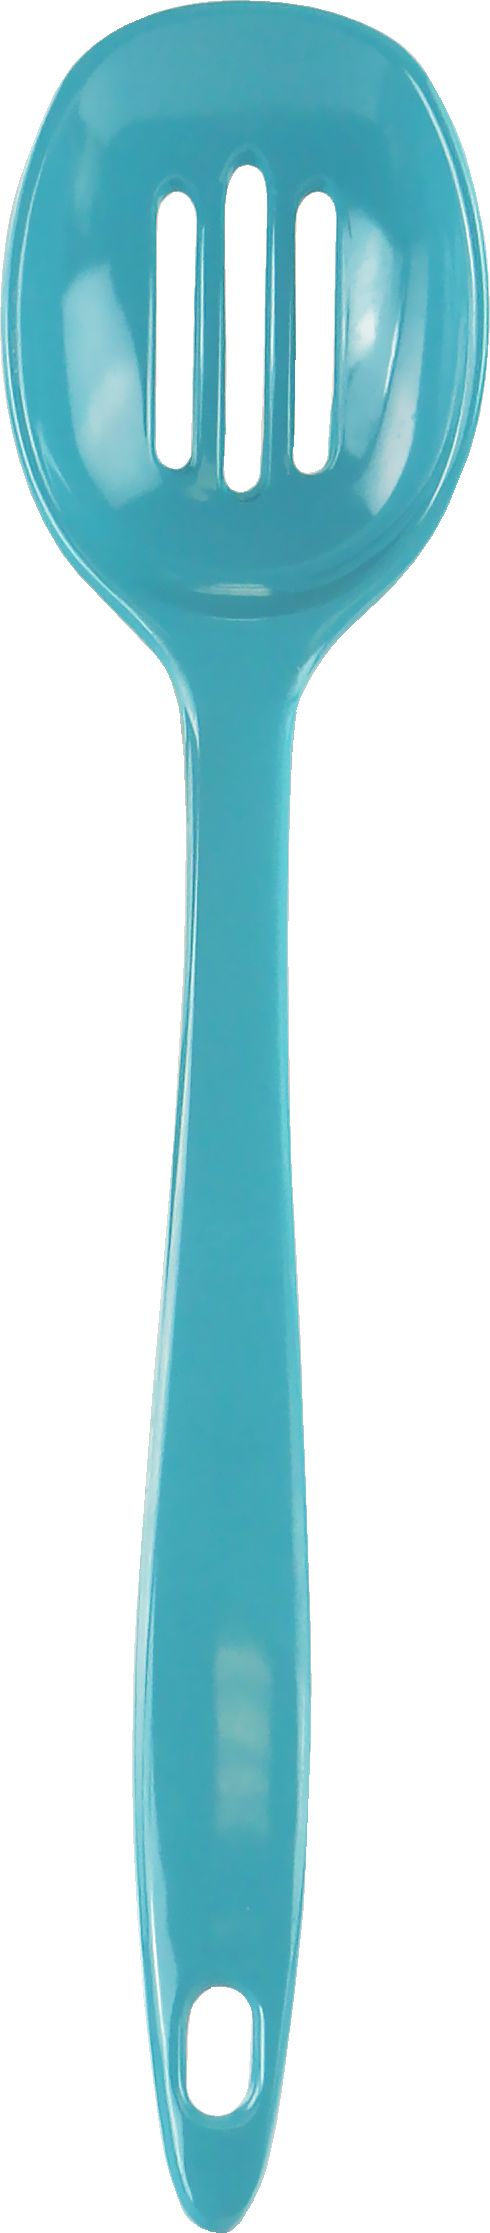 98372 Calypso Basics Melamine Slotted Spoon - Turquoise